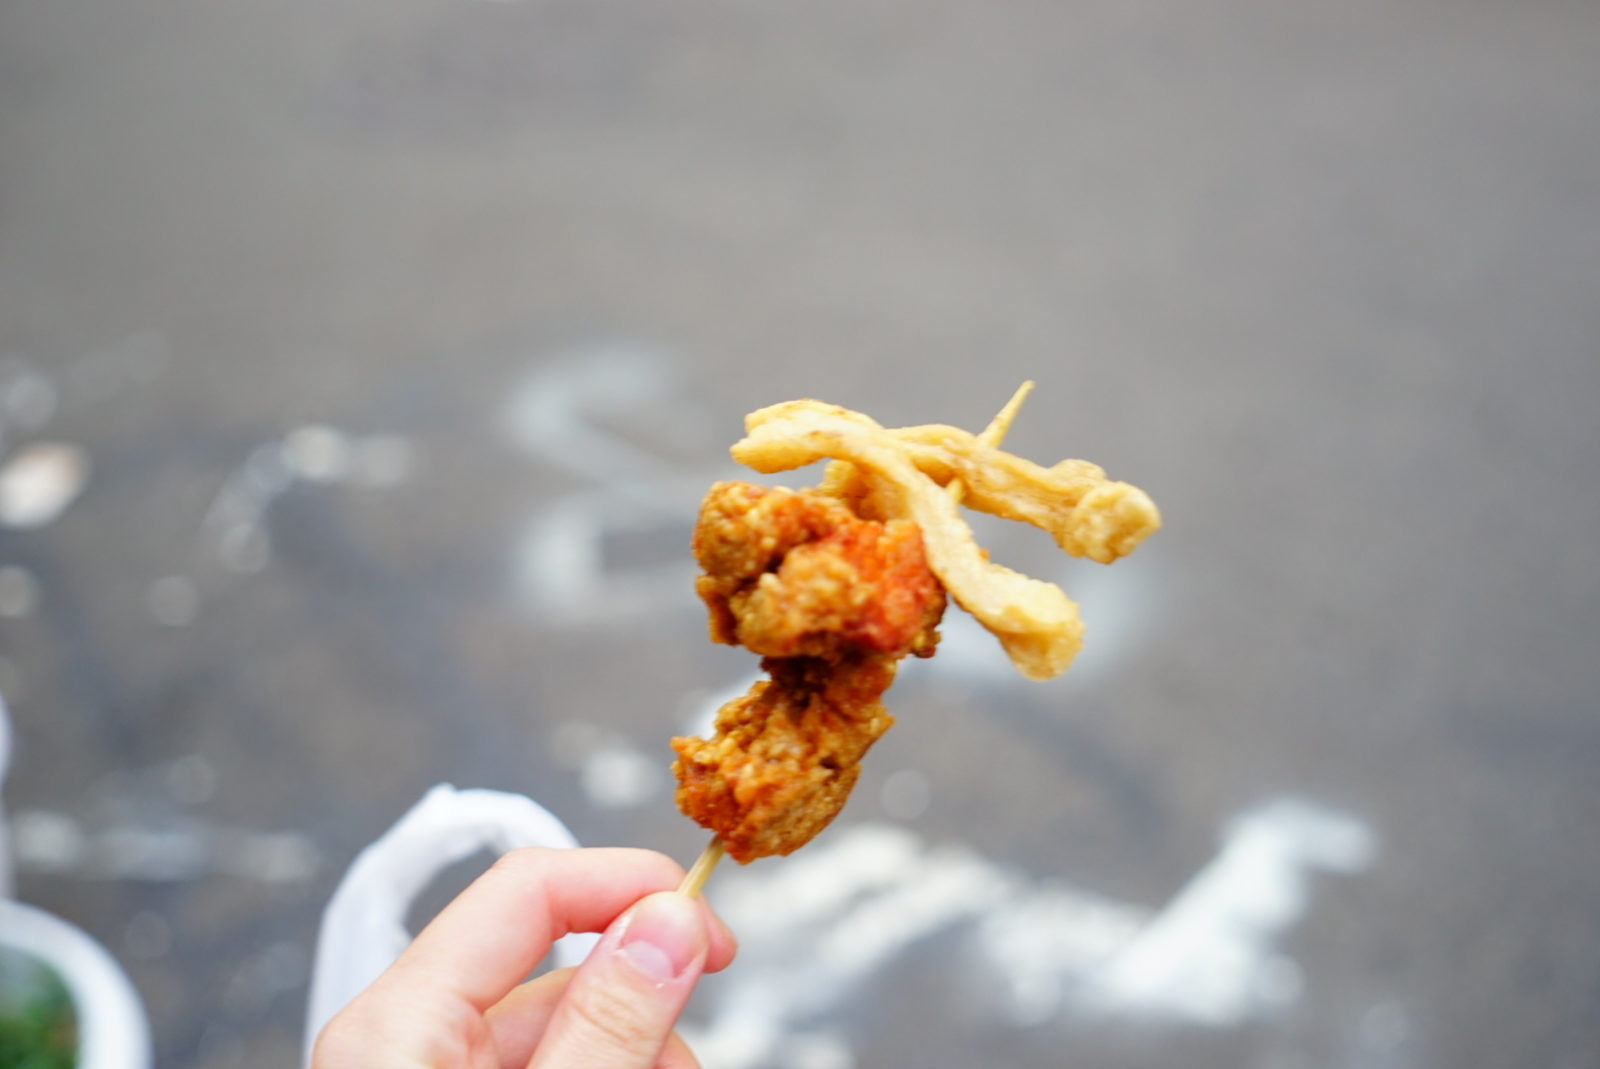  【三味鹽酥雞】新竹美食超激推 新竹市長也推薦的超酥脆鹽酥雞